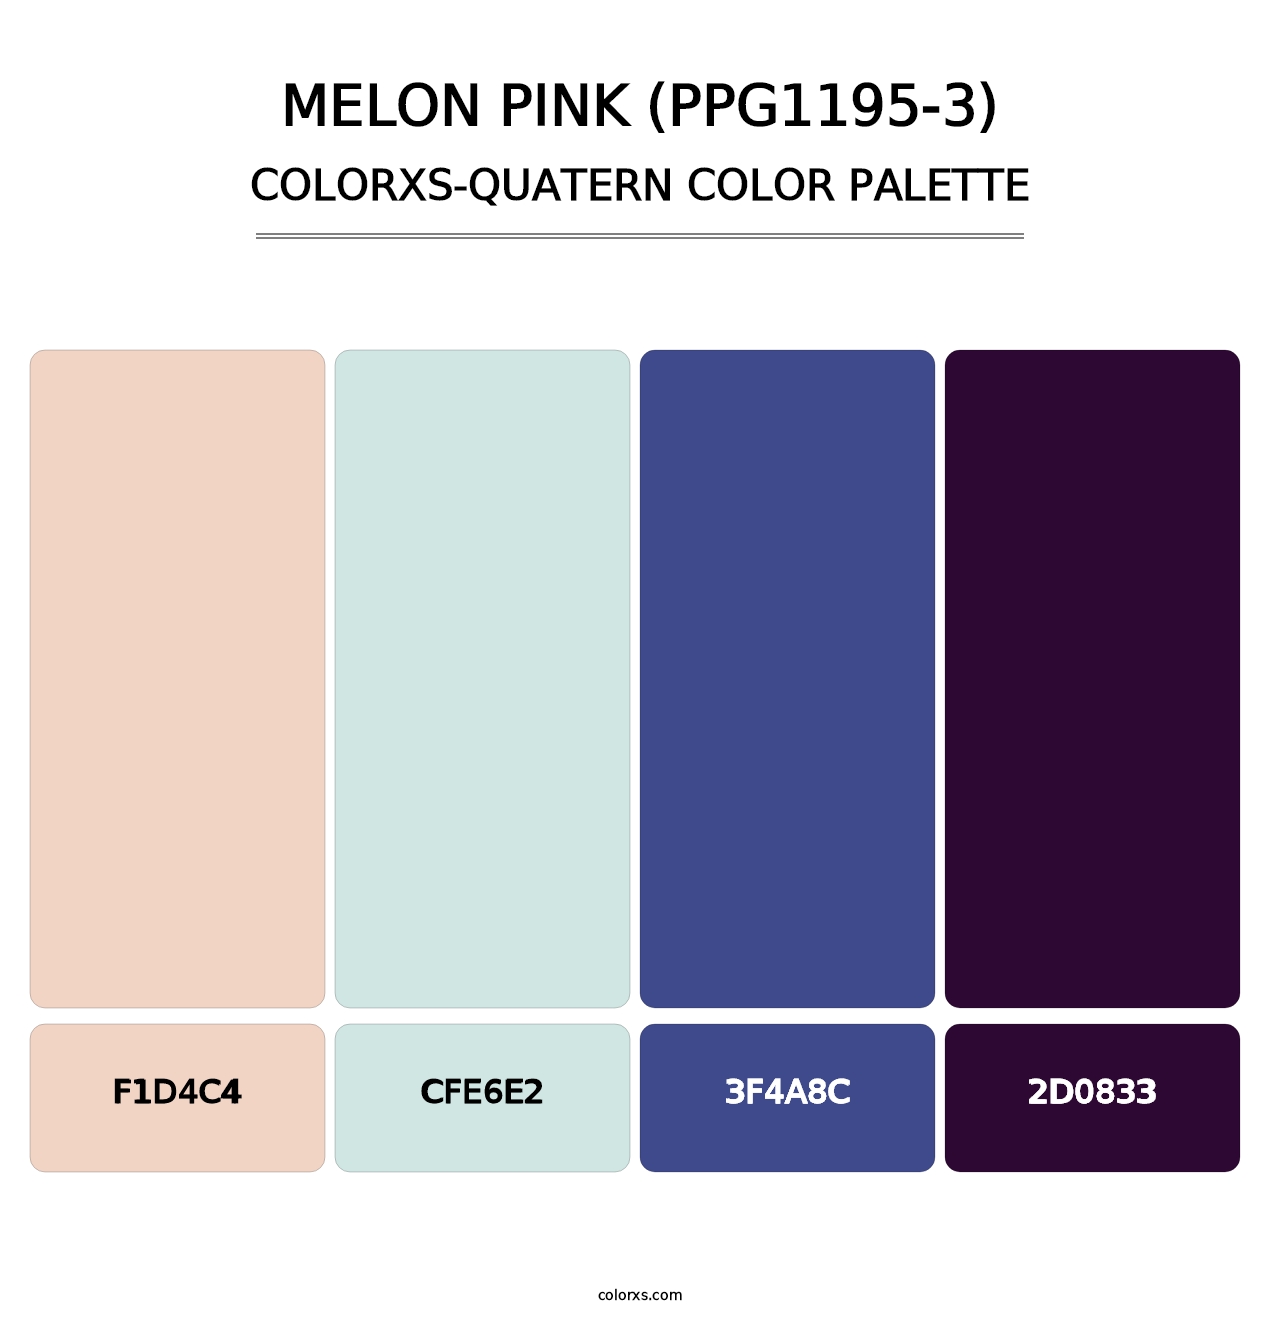 Melon Pink (PPG1195-3) - Colorxs Quatern Palette